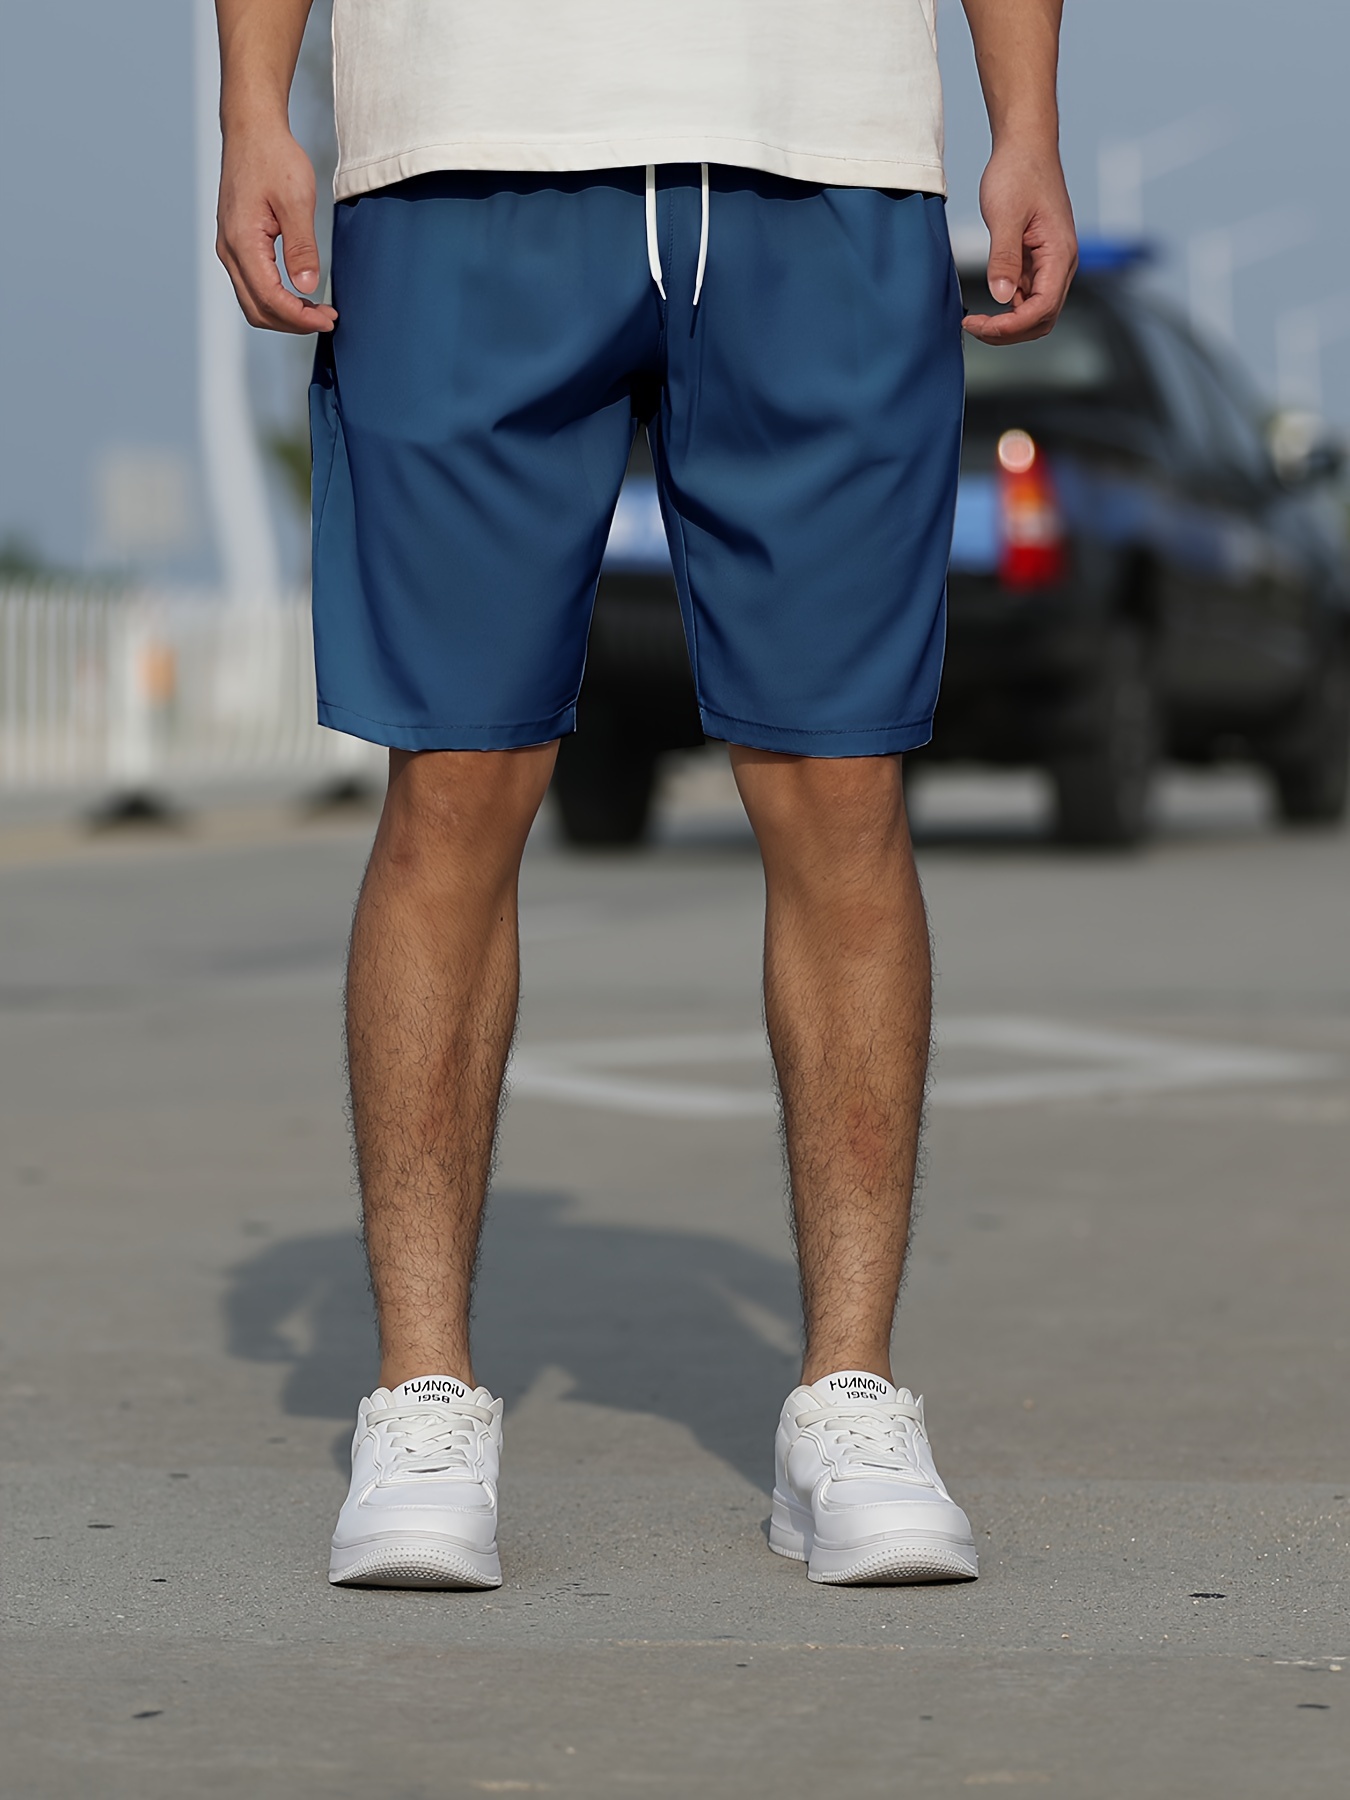 Plus Size Shorts Hombres Sólidos Transpirables Secado Rápido